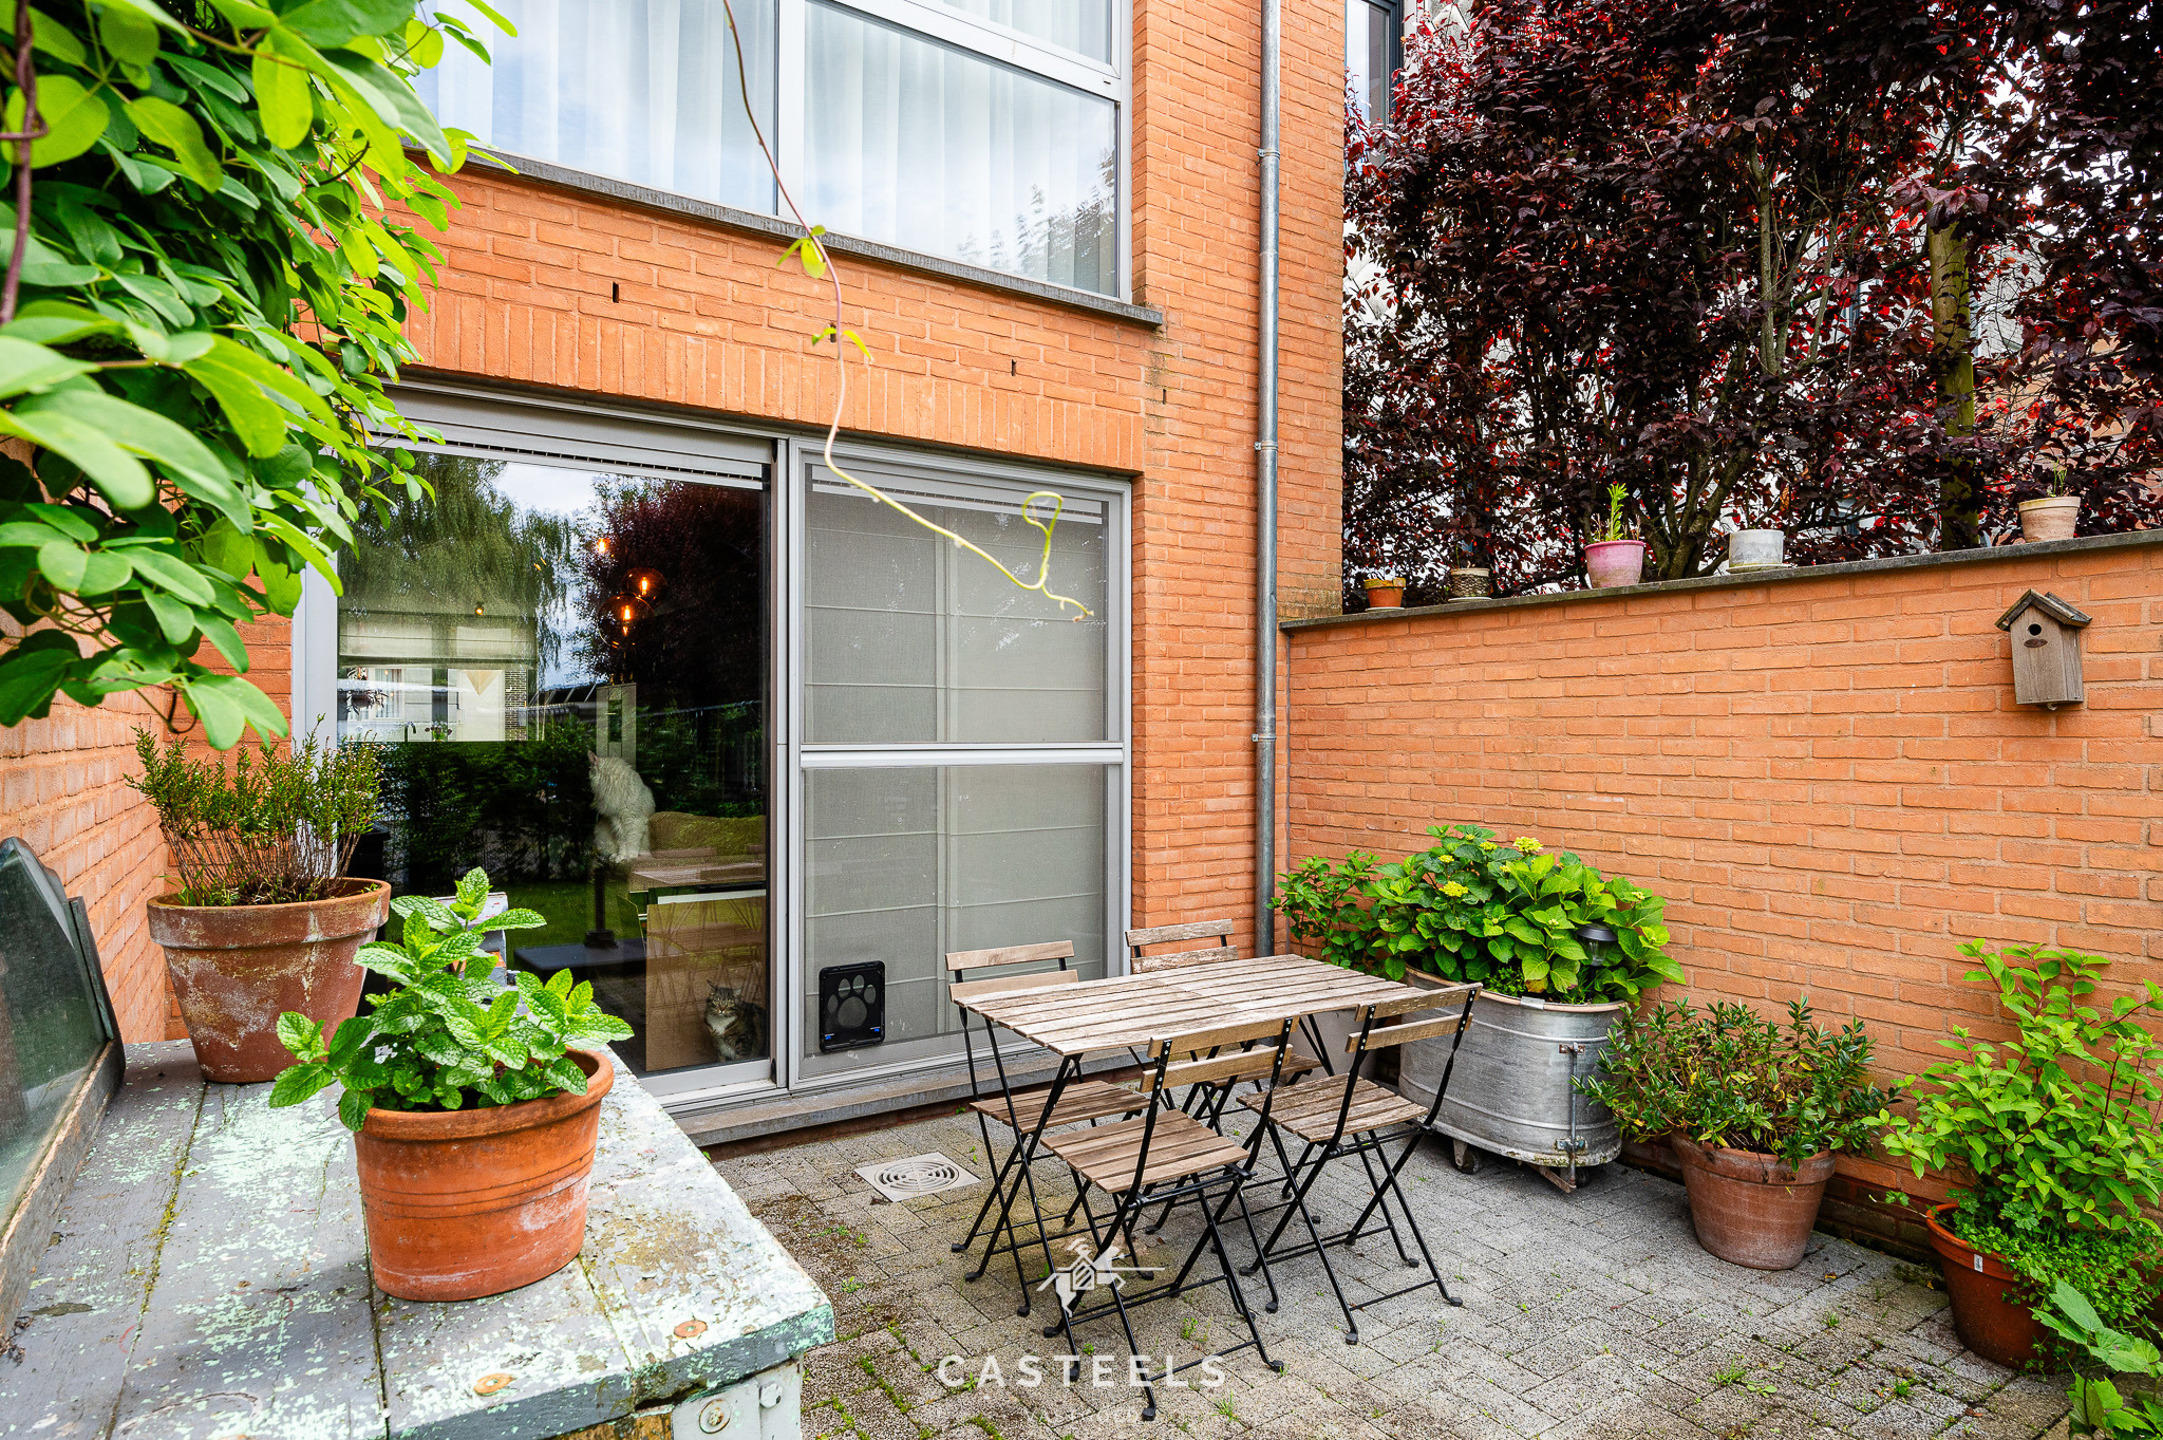 Afbeelding Appartement in hart Munkzwalm met tuin en terras te koop - Casteels Vastgoed